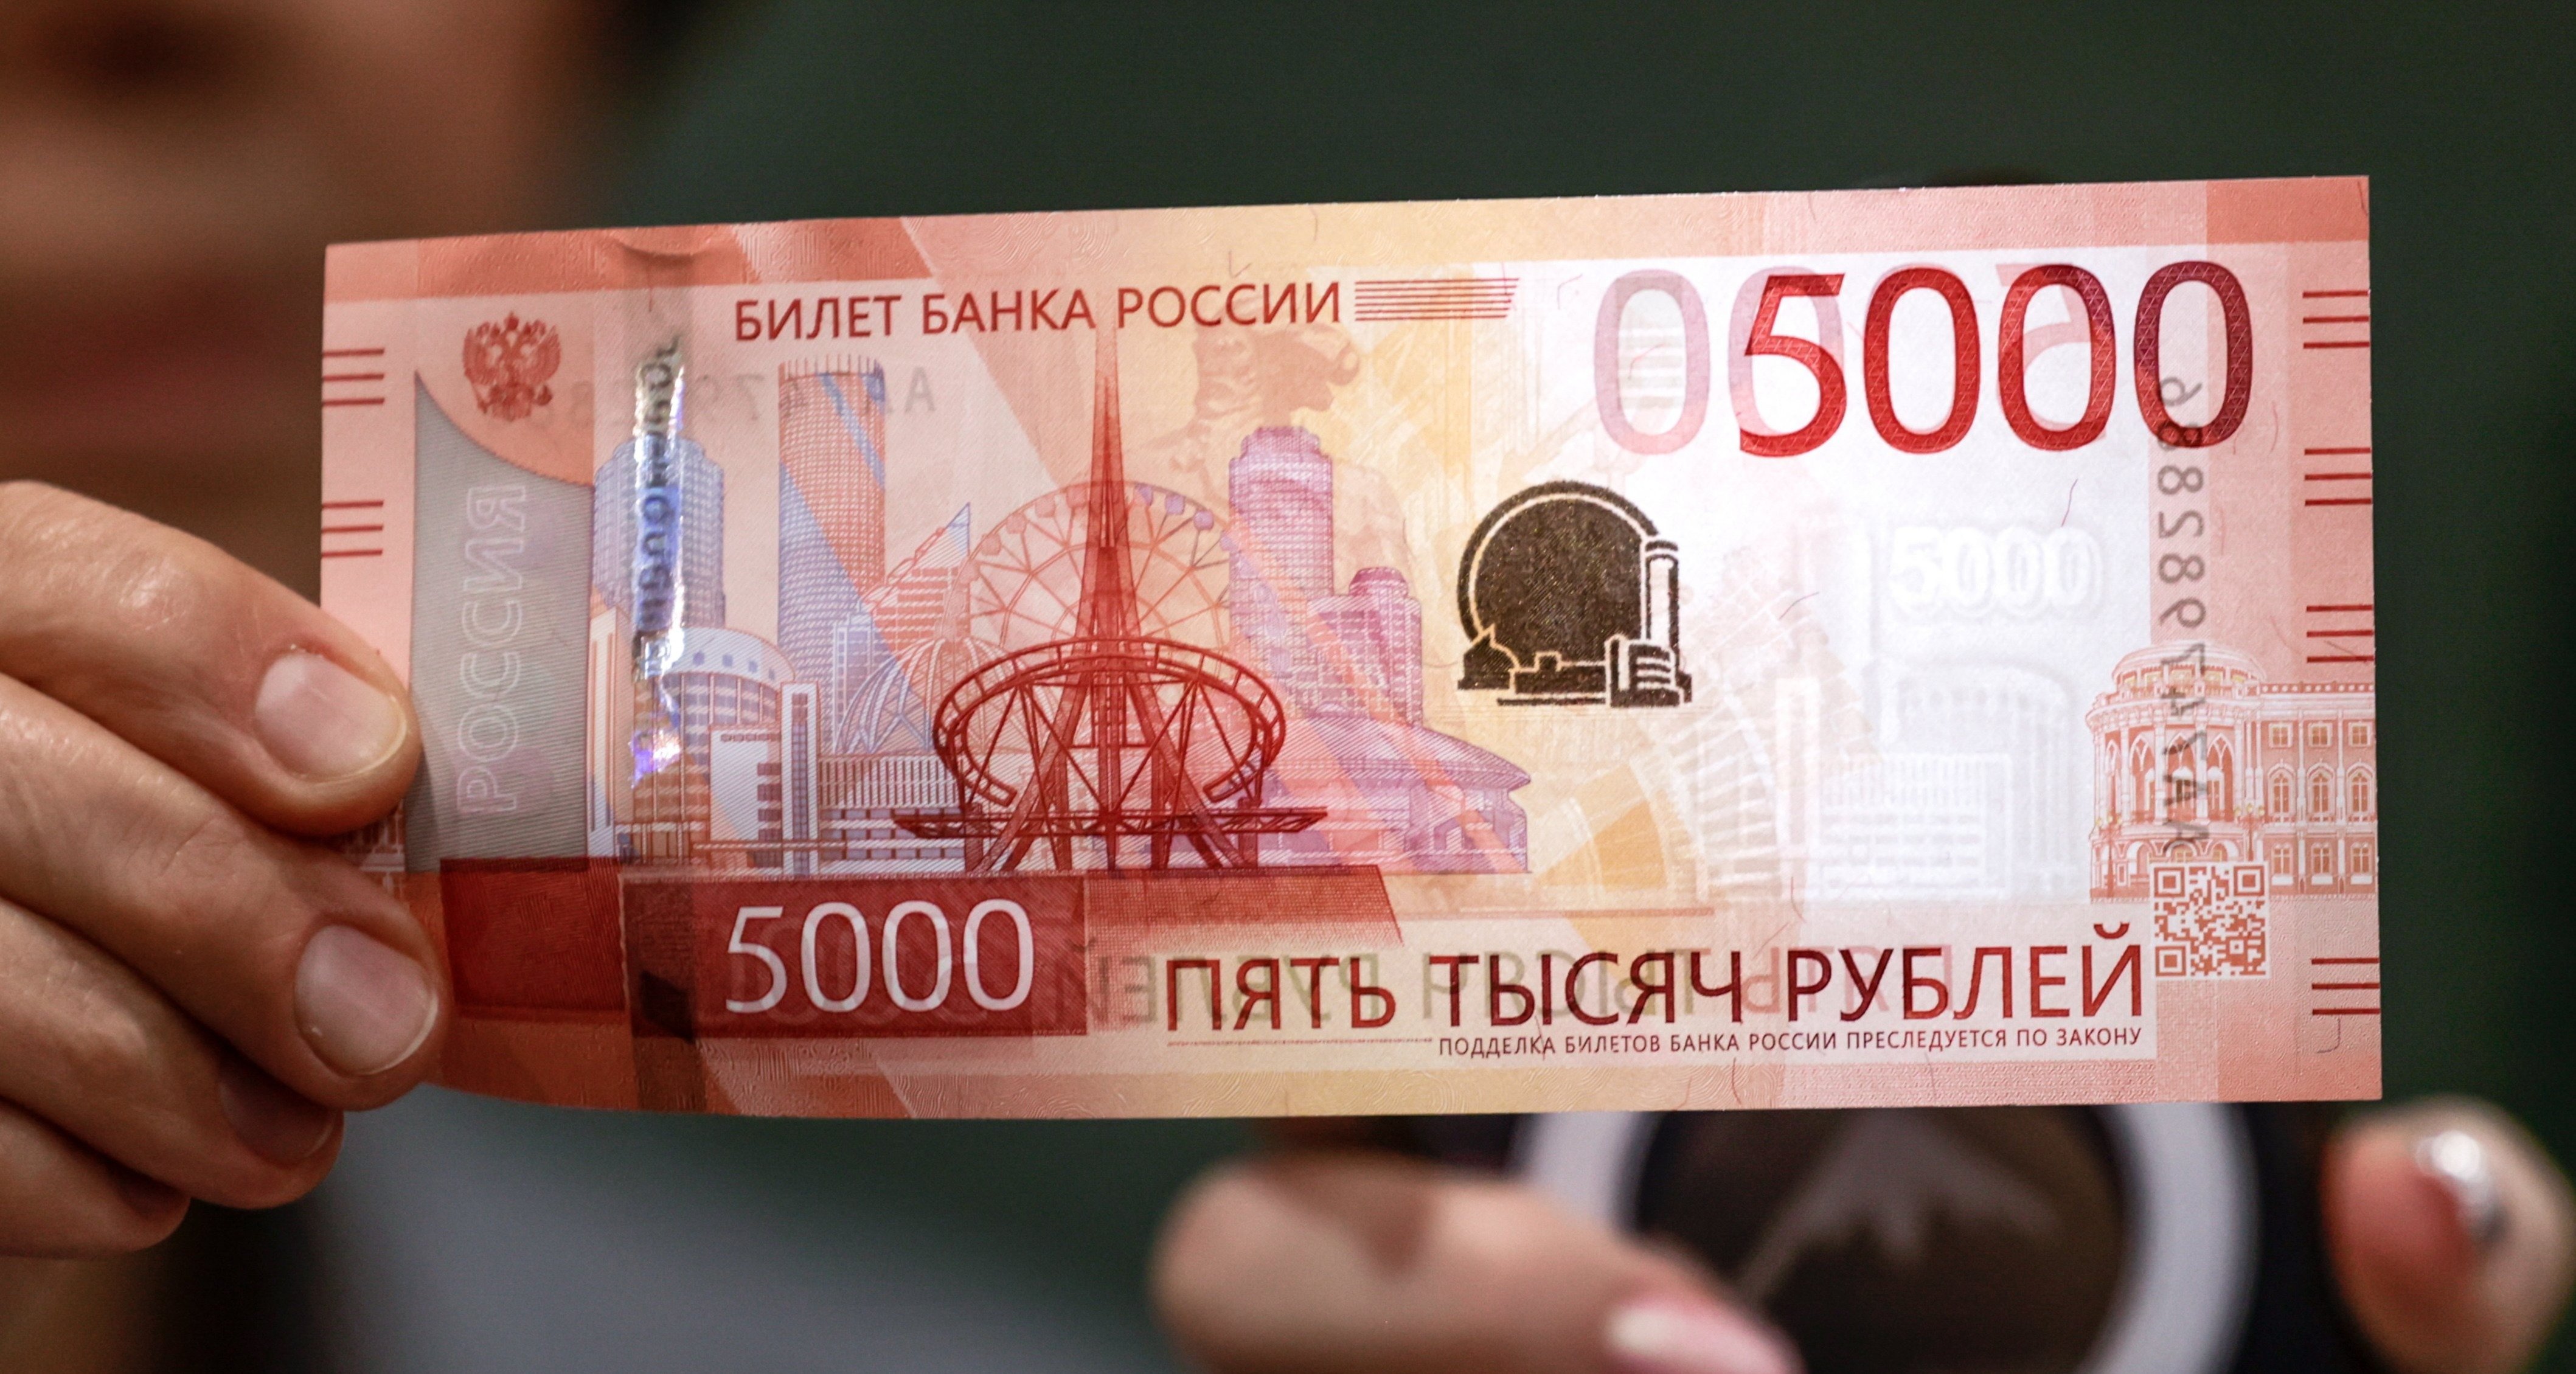 ЦБ предупредил о новой мошеннической схеме с 5000-рублевыми банкнотами  12.12.2023 | Банки.ру